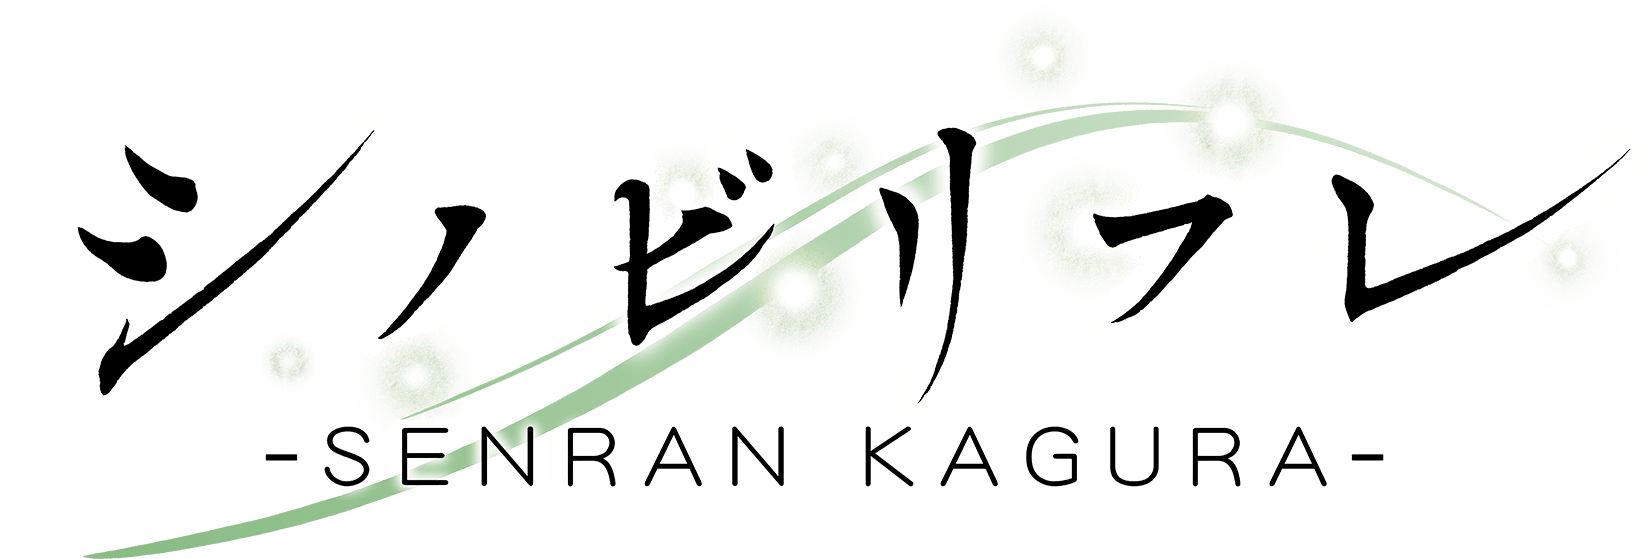 シノビリフレ -SENRAN KAGURA-ロゴ